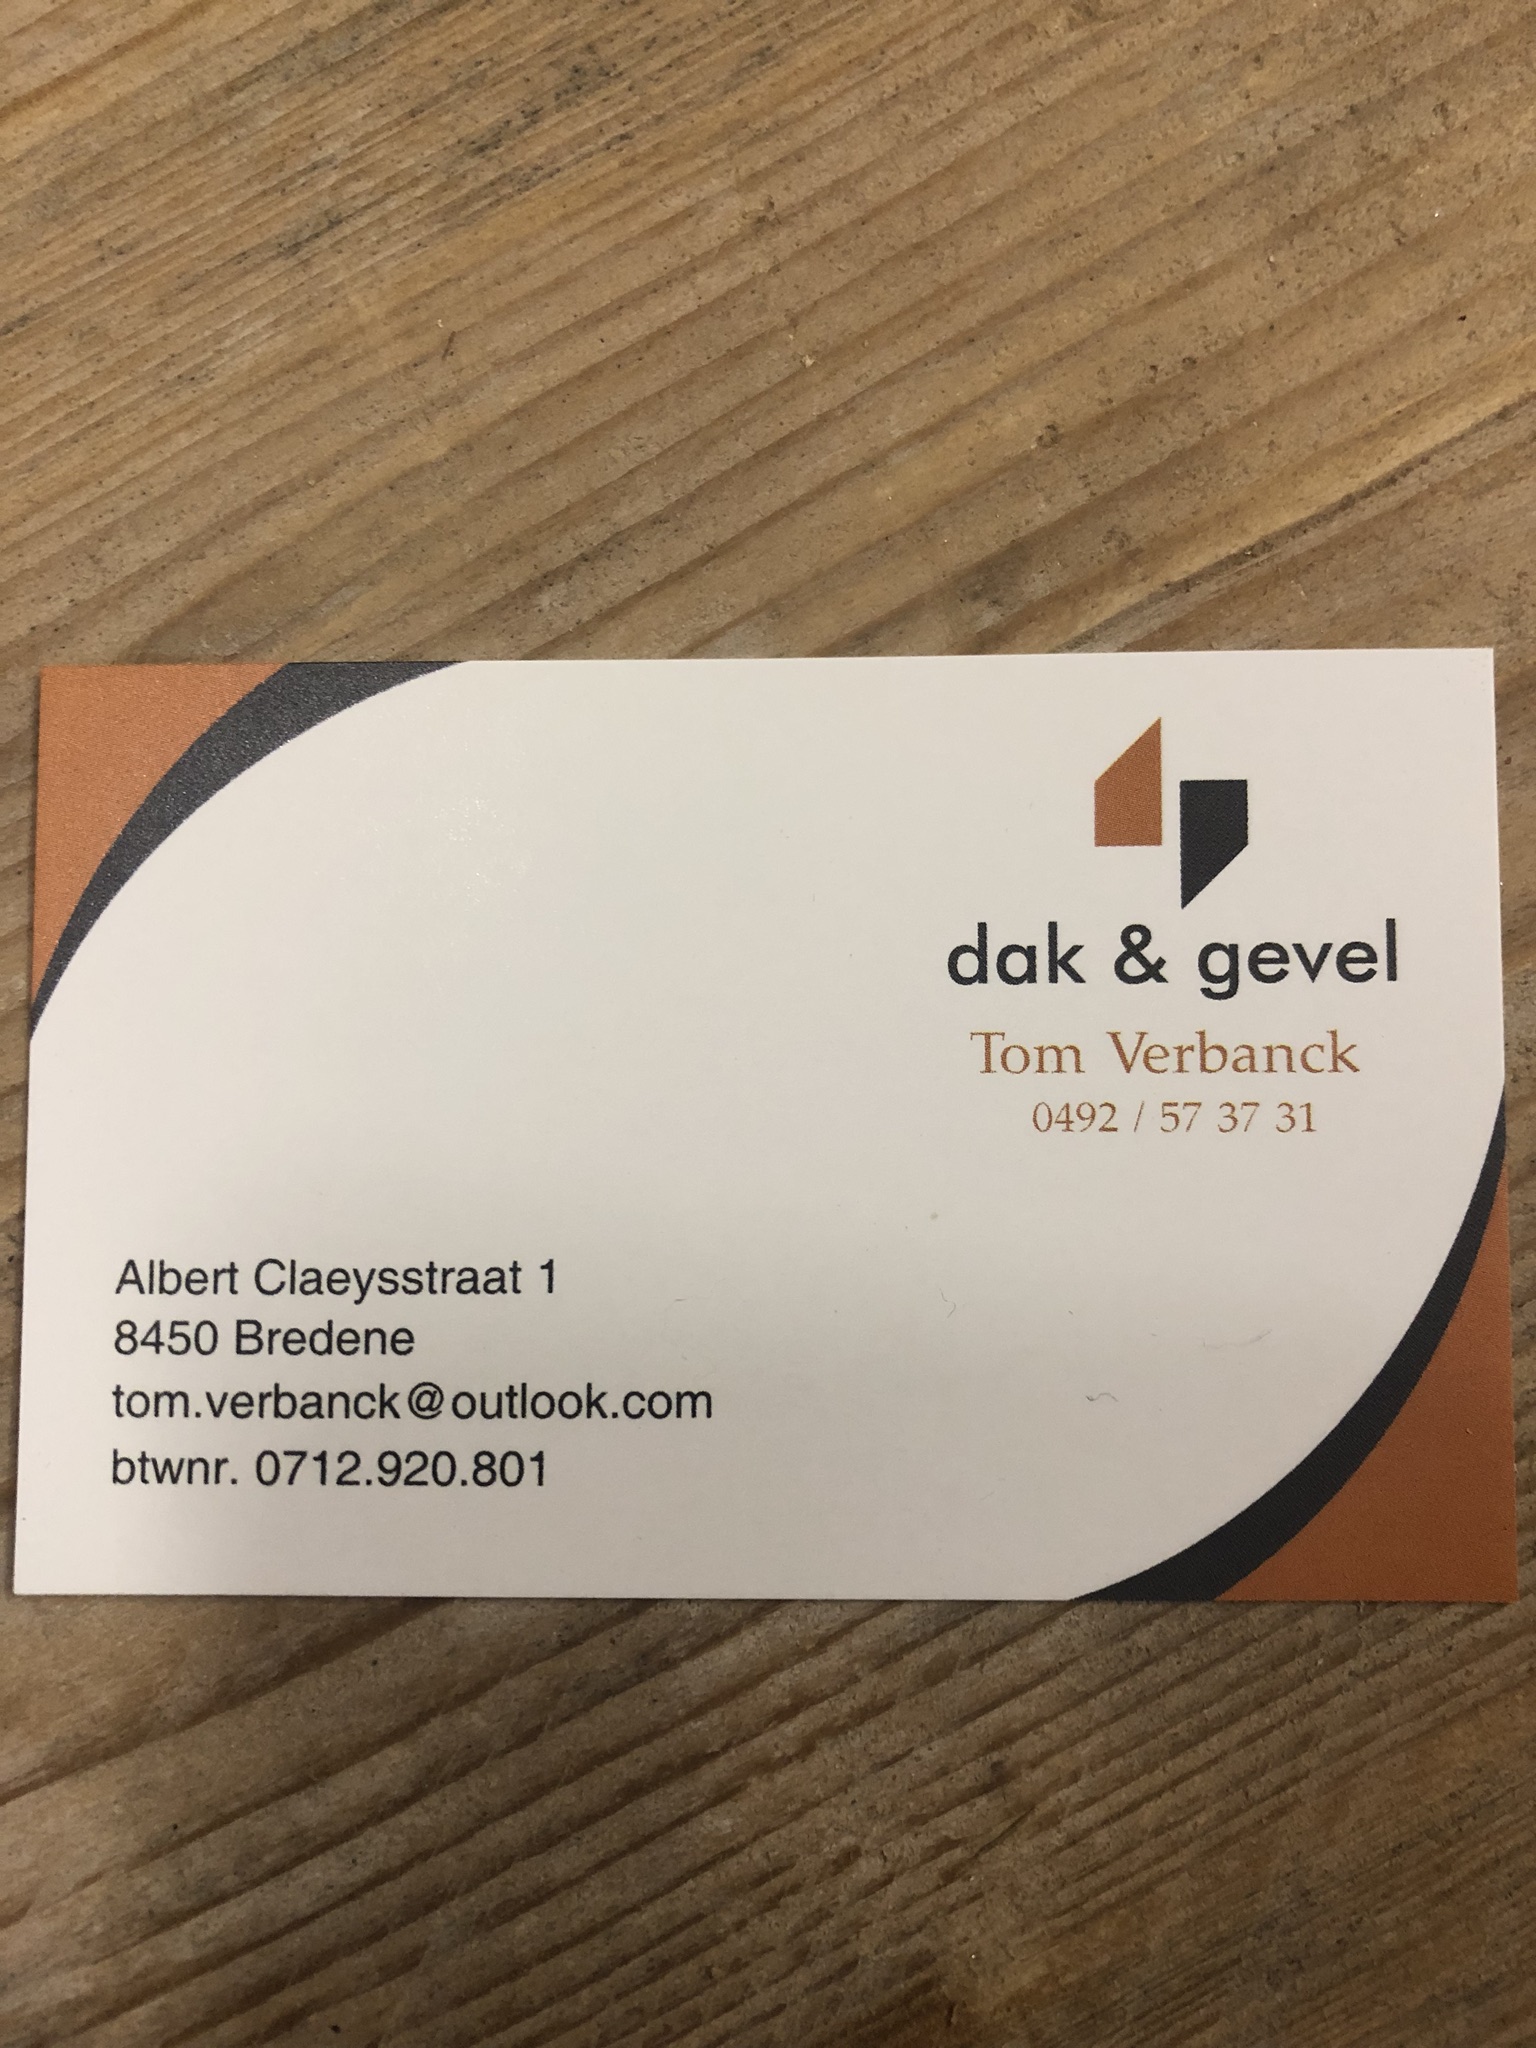 dakwerkers Sint-Blasius-Boekel Dak & Gevel Tom Verbanck